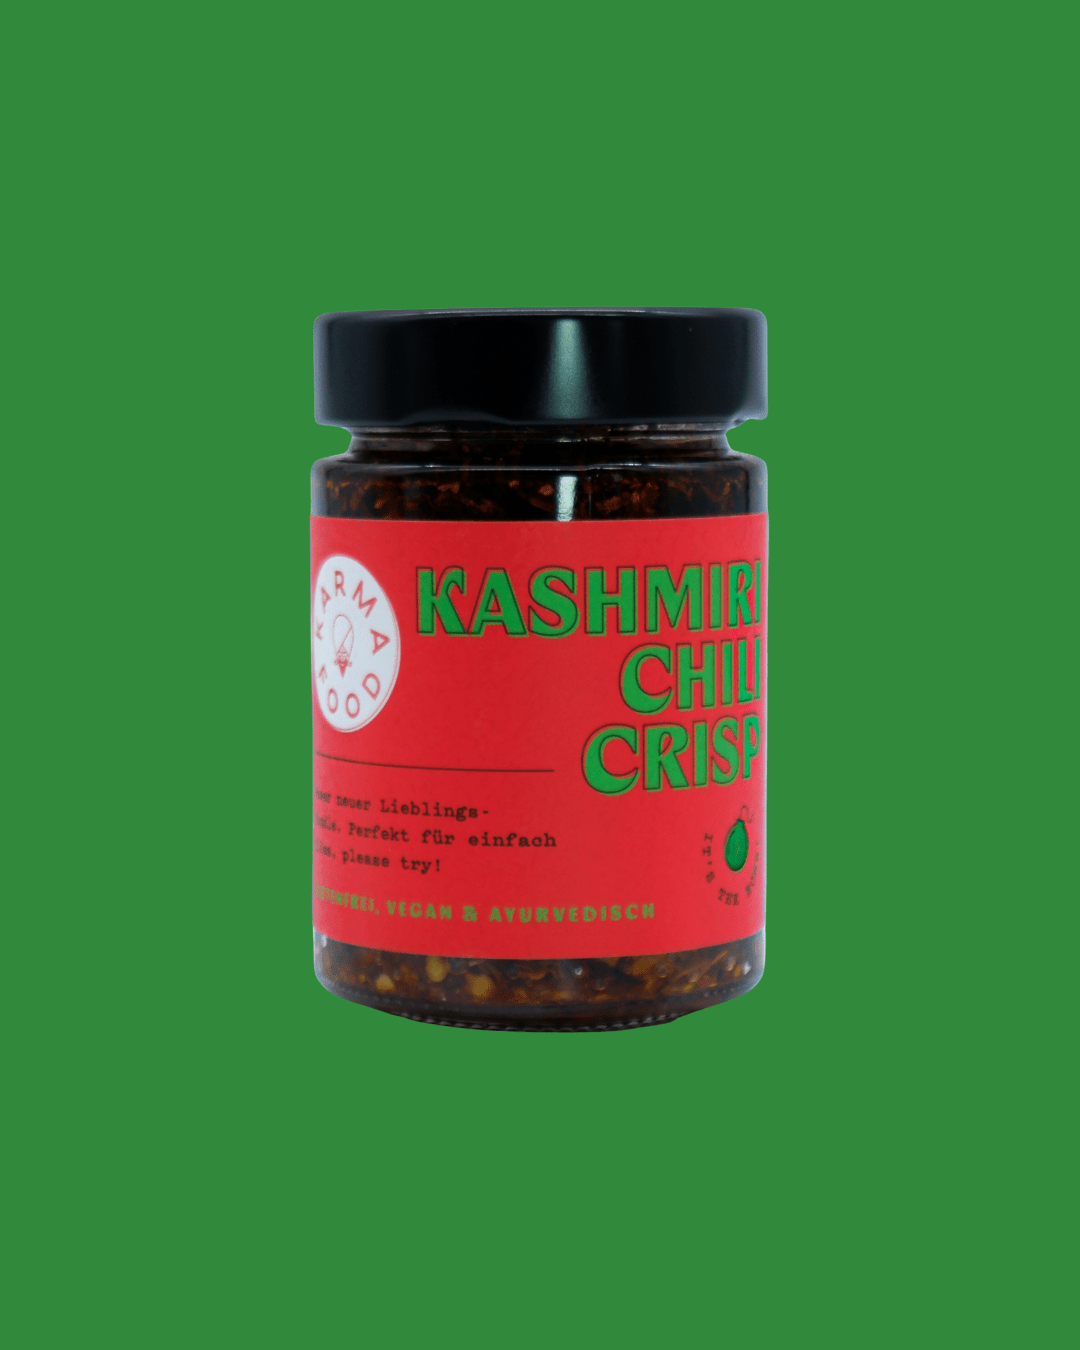 Kashmiri Chili Crisp